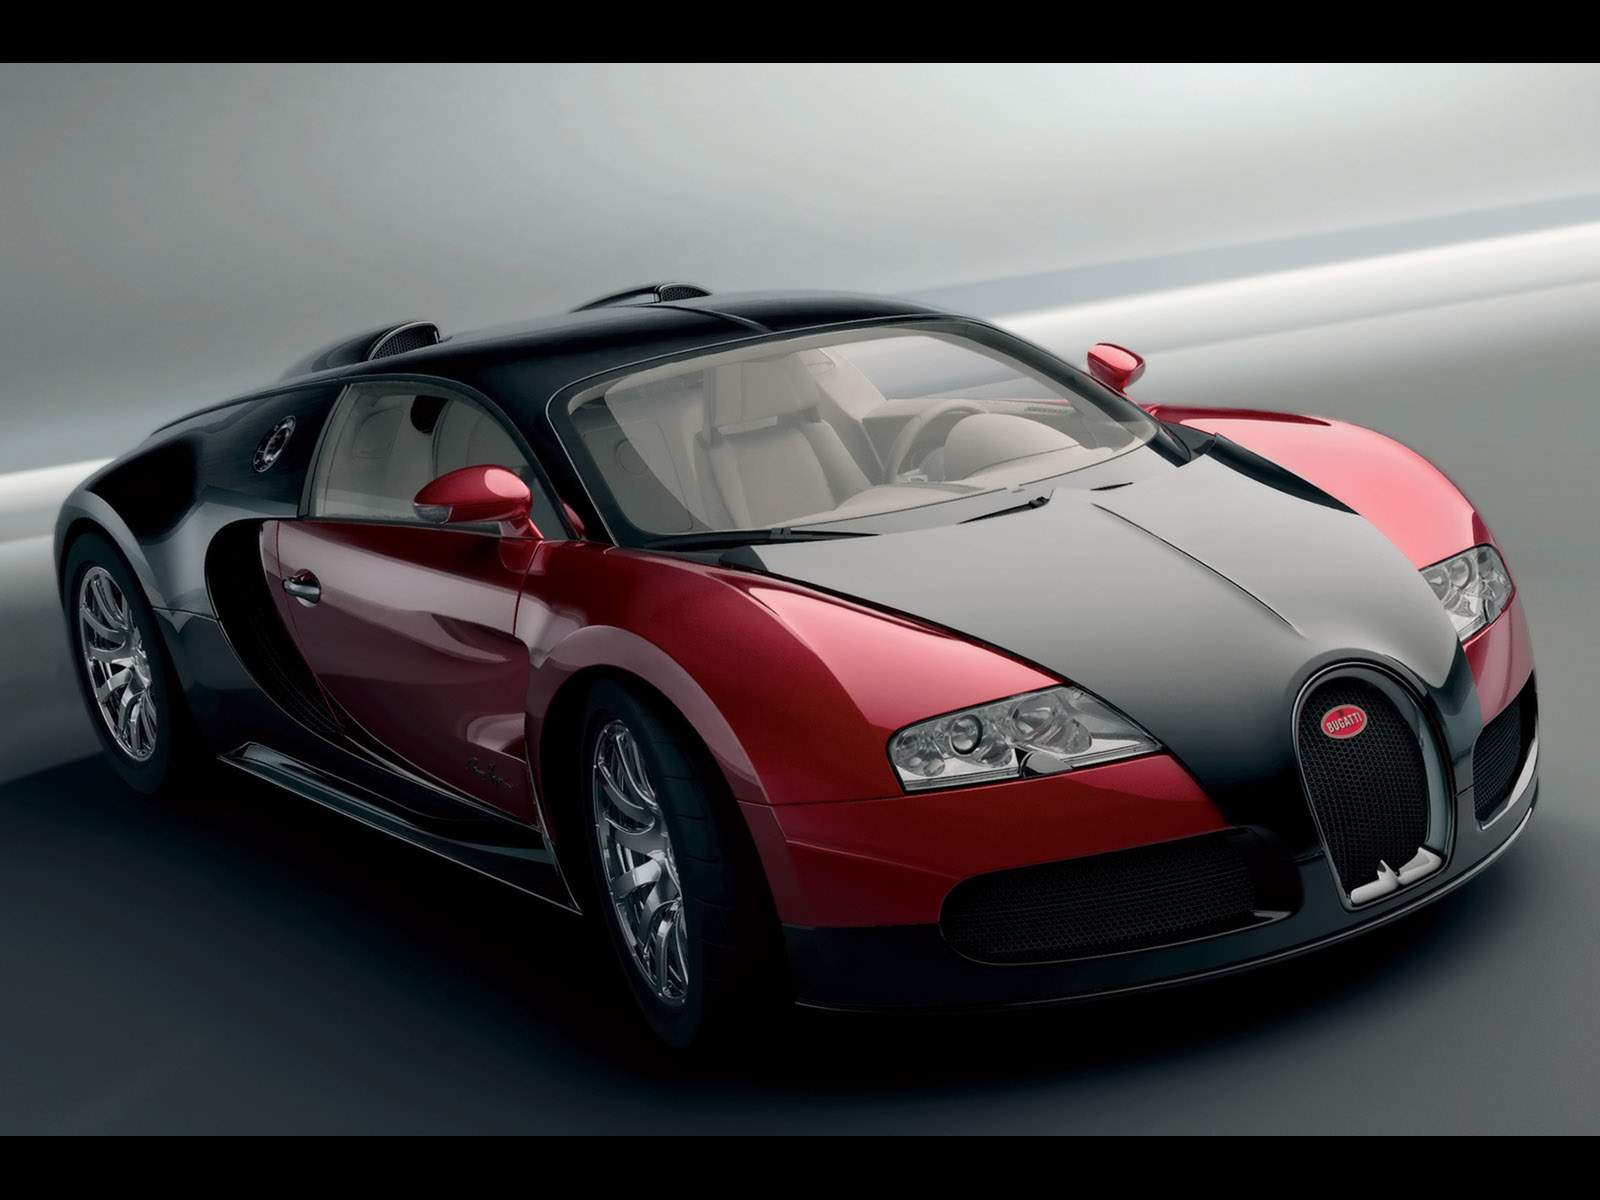 bugatti-veyron-study-2-red-front-angle-1600x1200.jpg